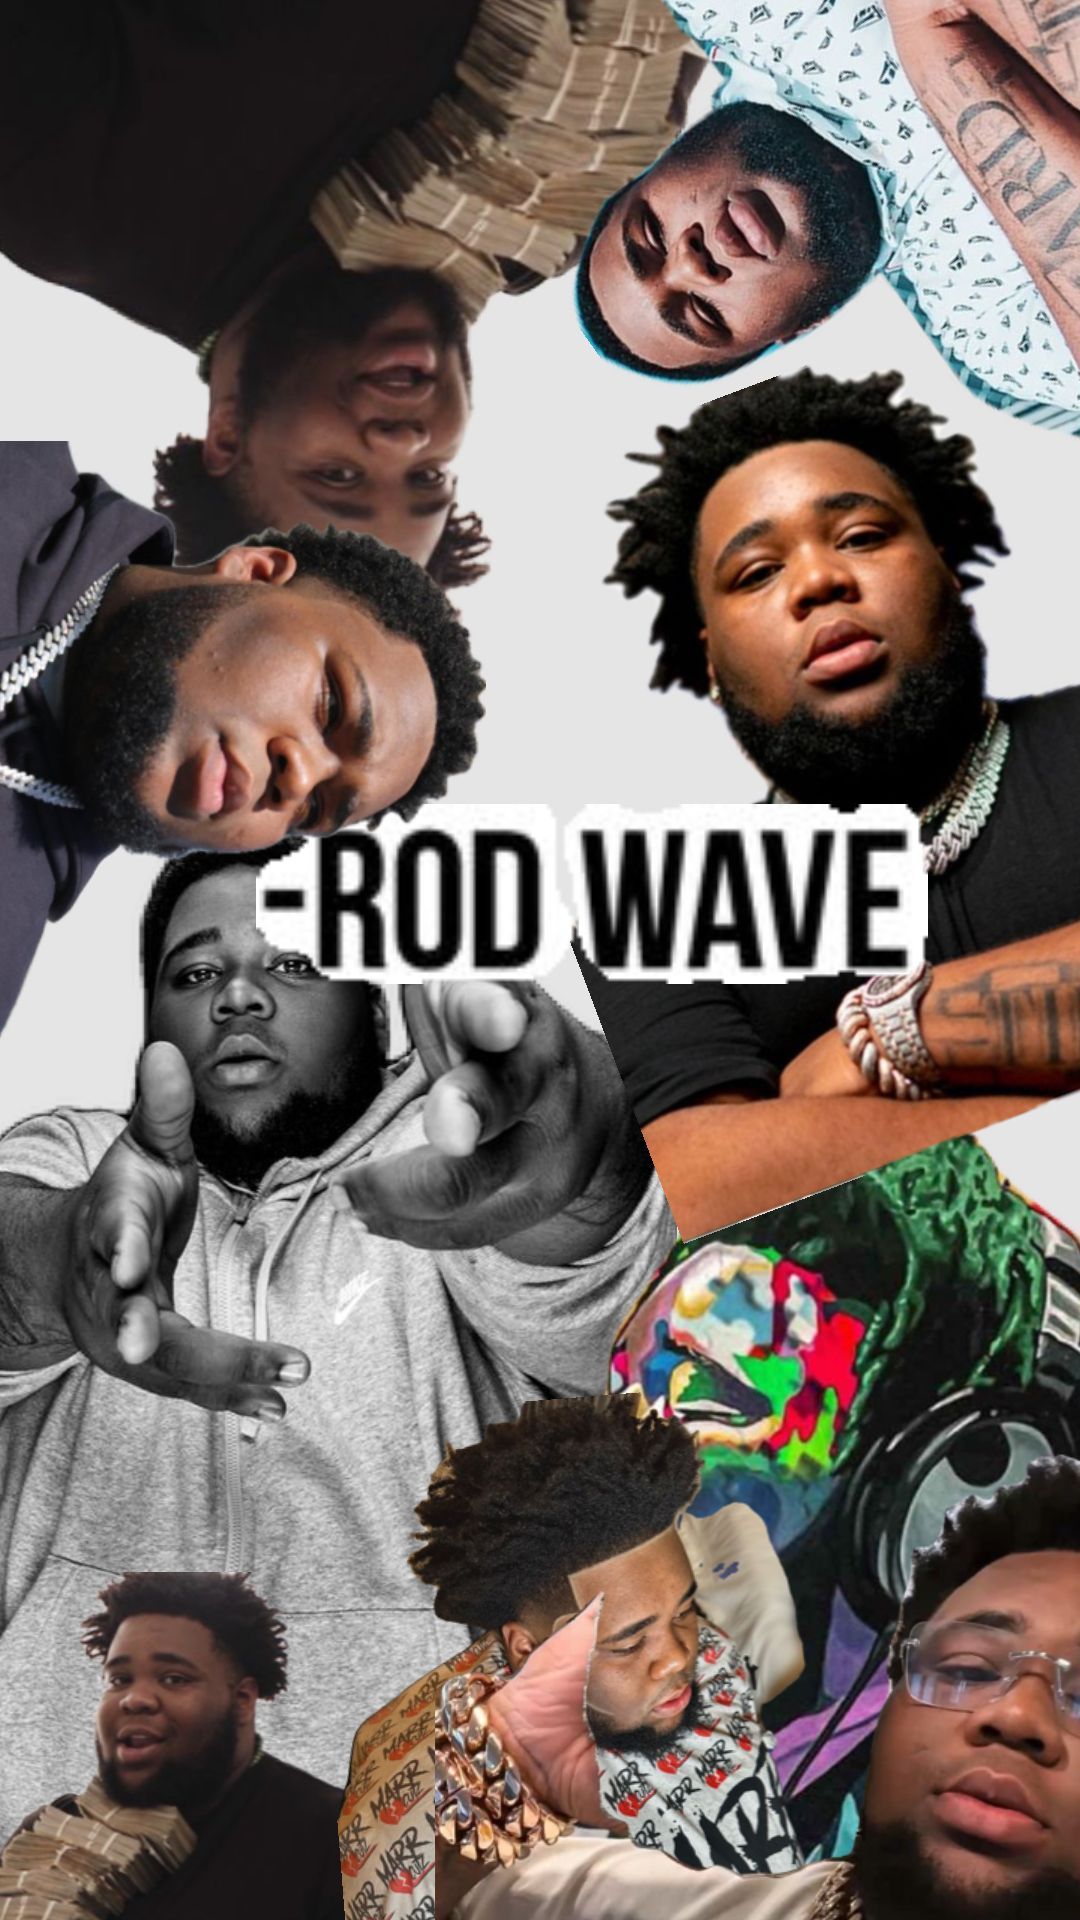 rodwave. Waves wallpaper, Rod wave